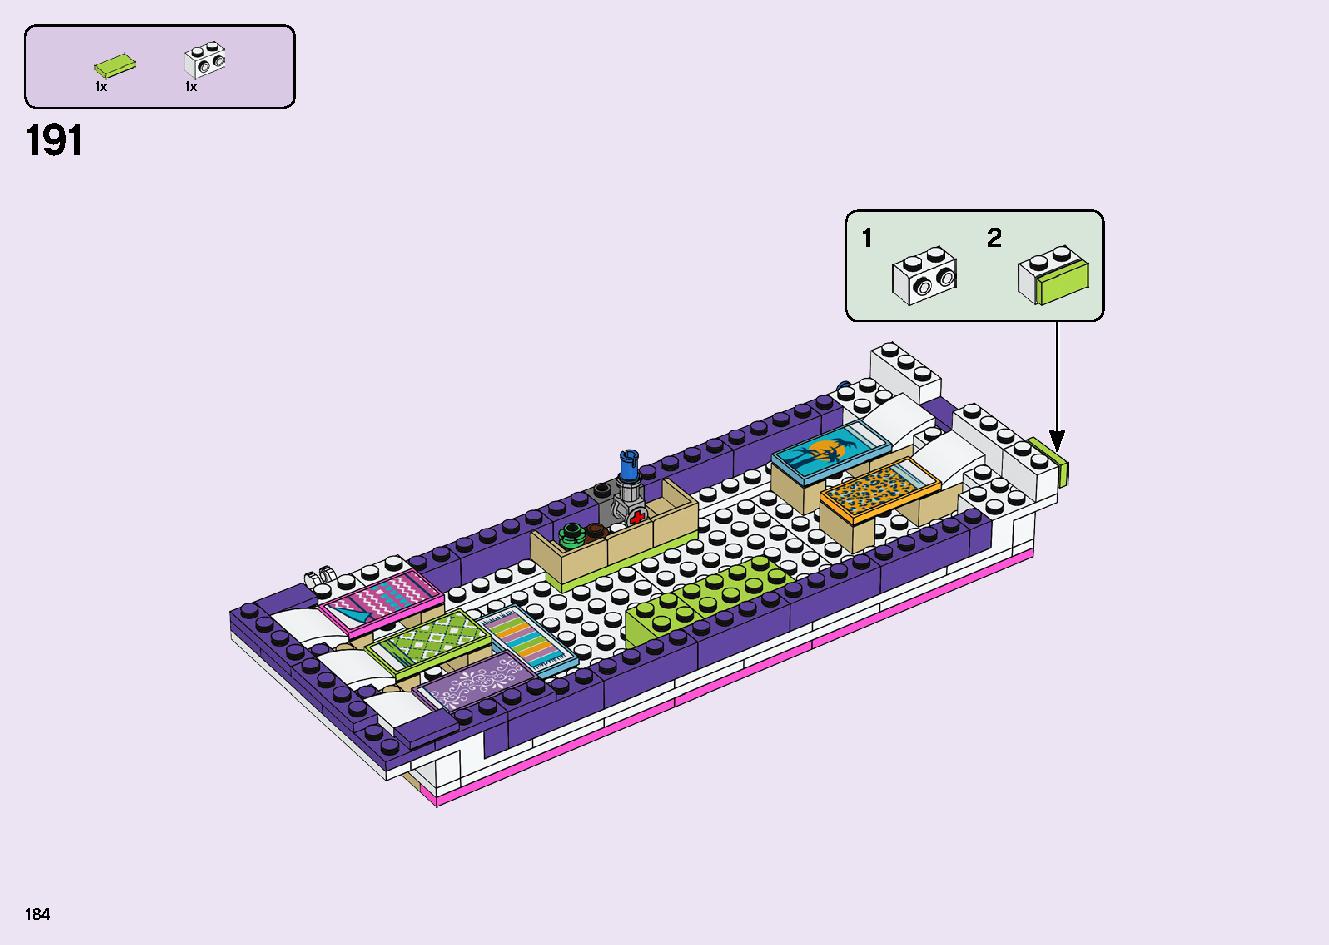 フレンズのうきうきハッピー・バス 41395 レゴの商品情報 レゴの説明書・組立方法 184 page